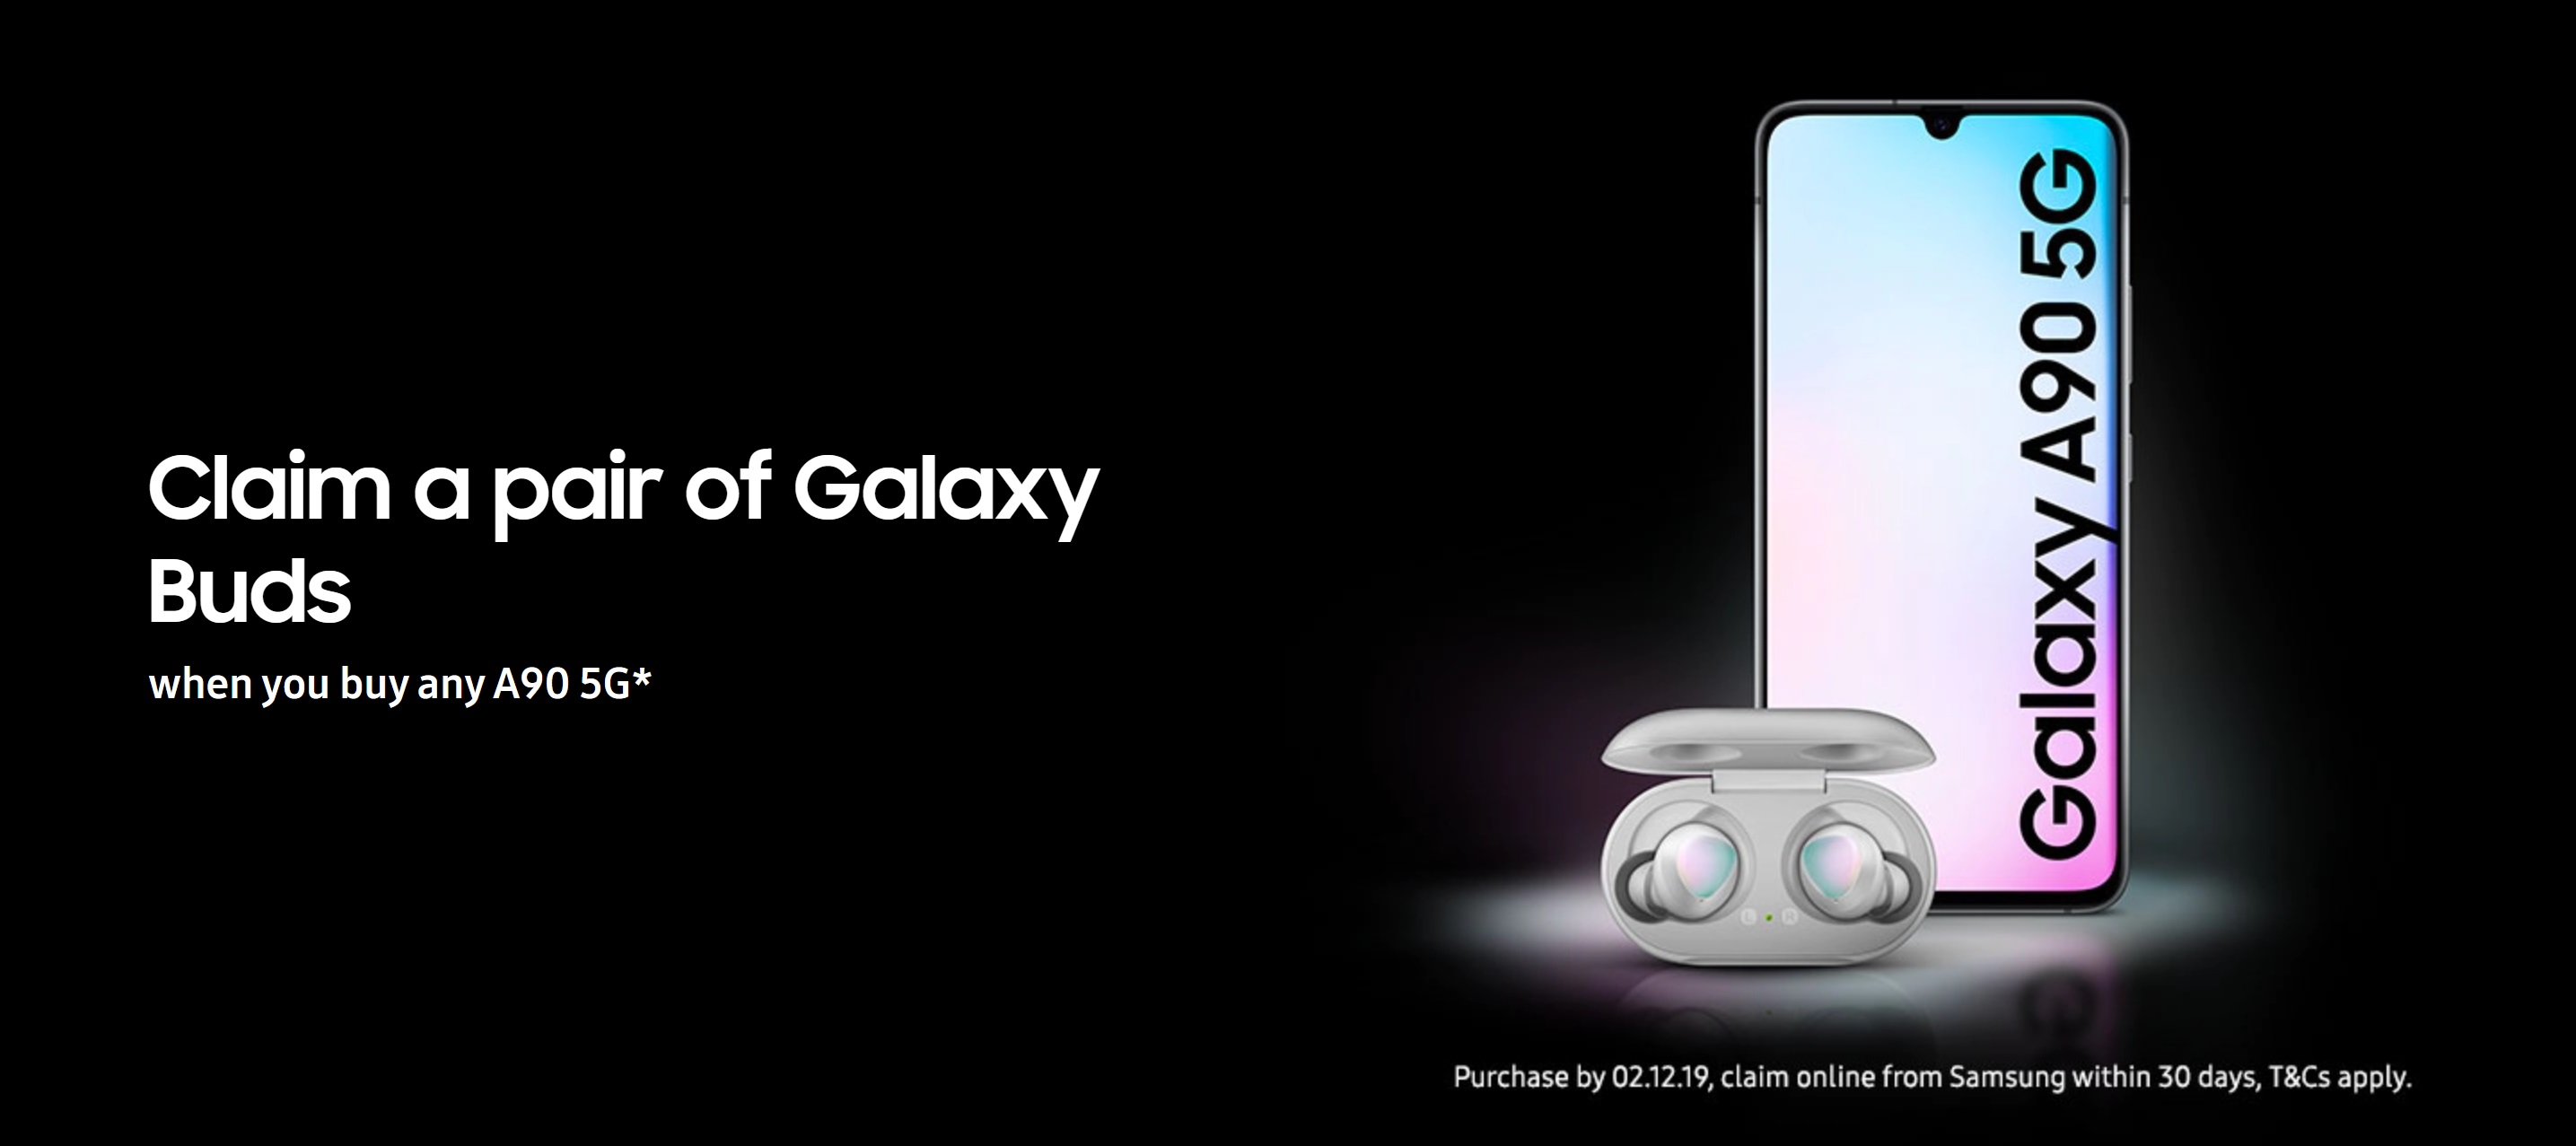 Samsung Galaxy A90 128GB 5G Black & White deals with free Galaxy Buds